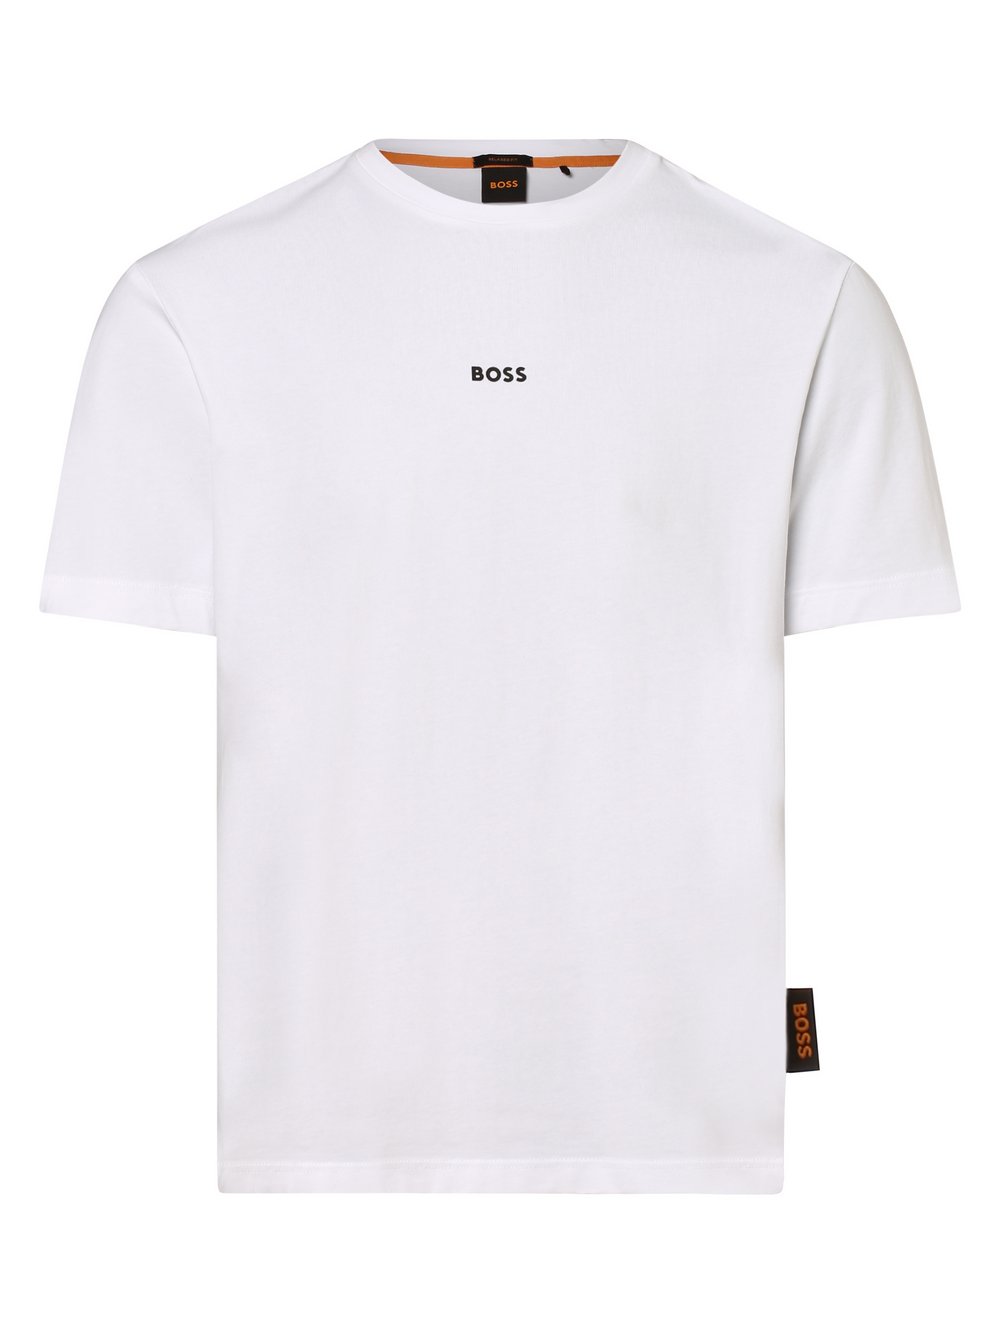 BOSS Orange - T-shirt męski – TChup, biały